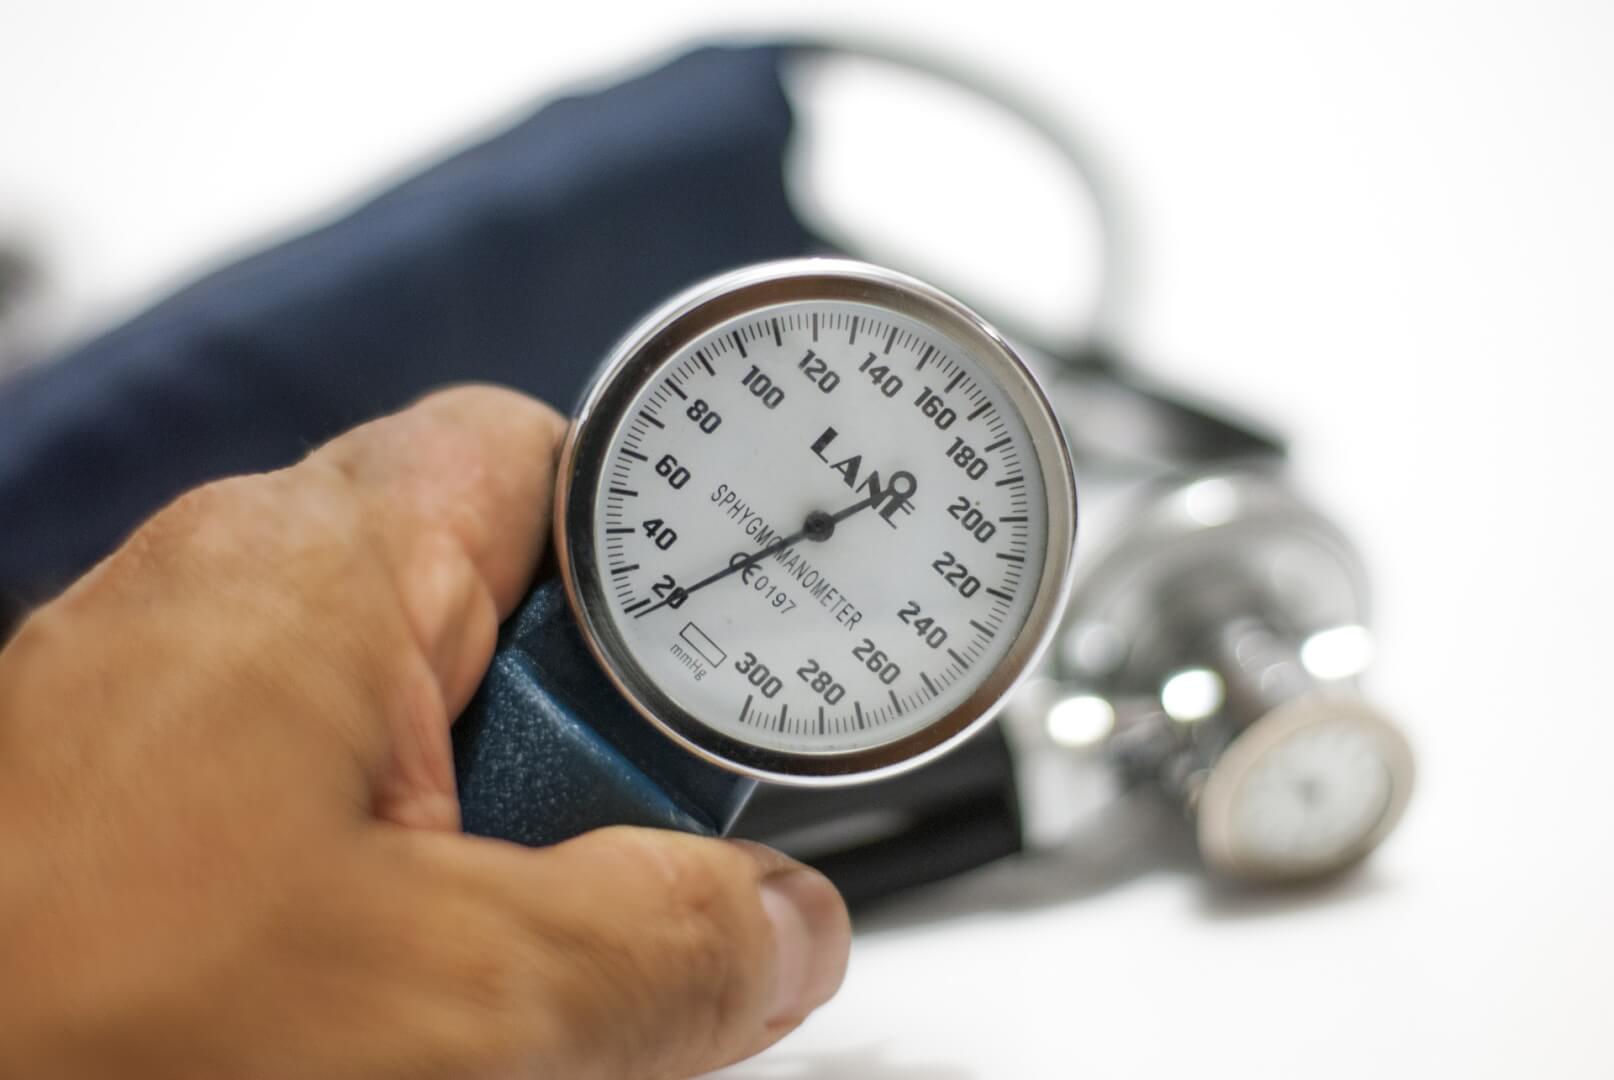 la tensión 14 9 y la tensión 11 7 miden la presión arterial en estándares normales en una persona adulta